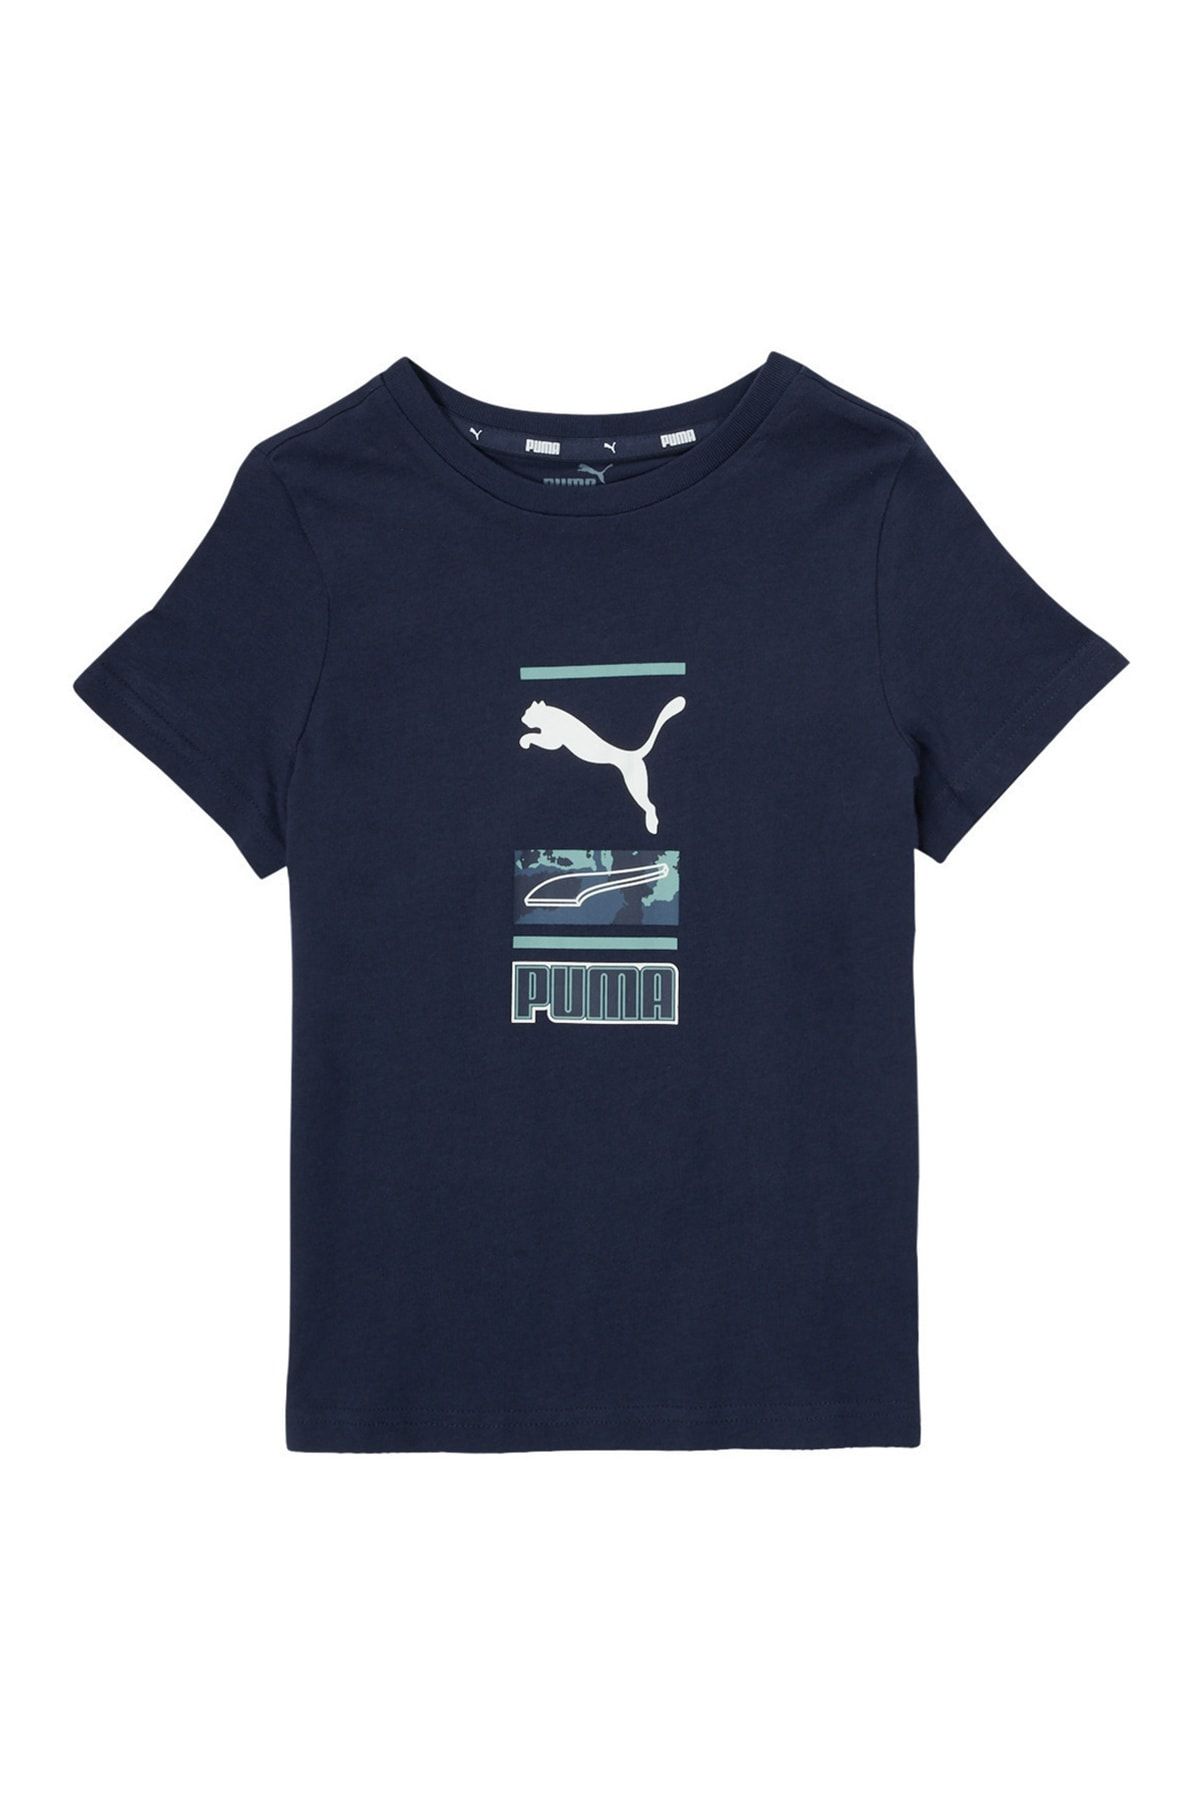 Puma Lacivert Erkek Çocuk T-Shirt 84728106 Alpha Graphic Tee